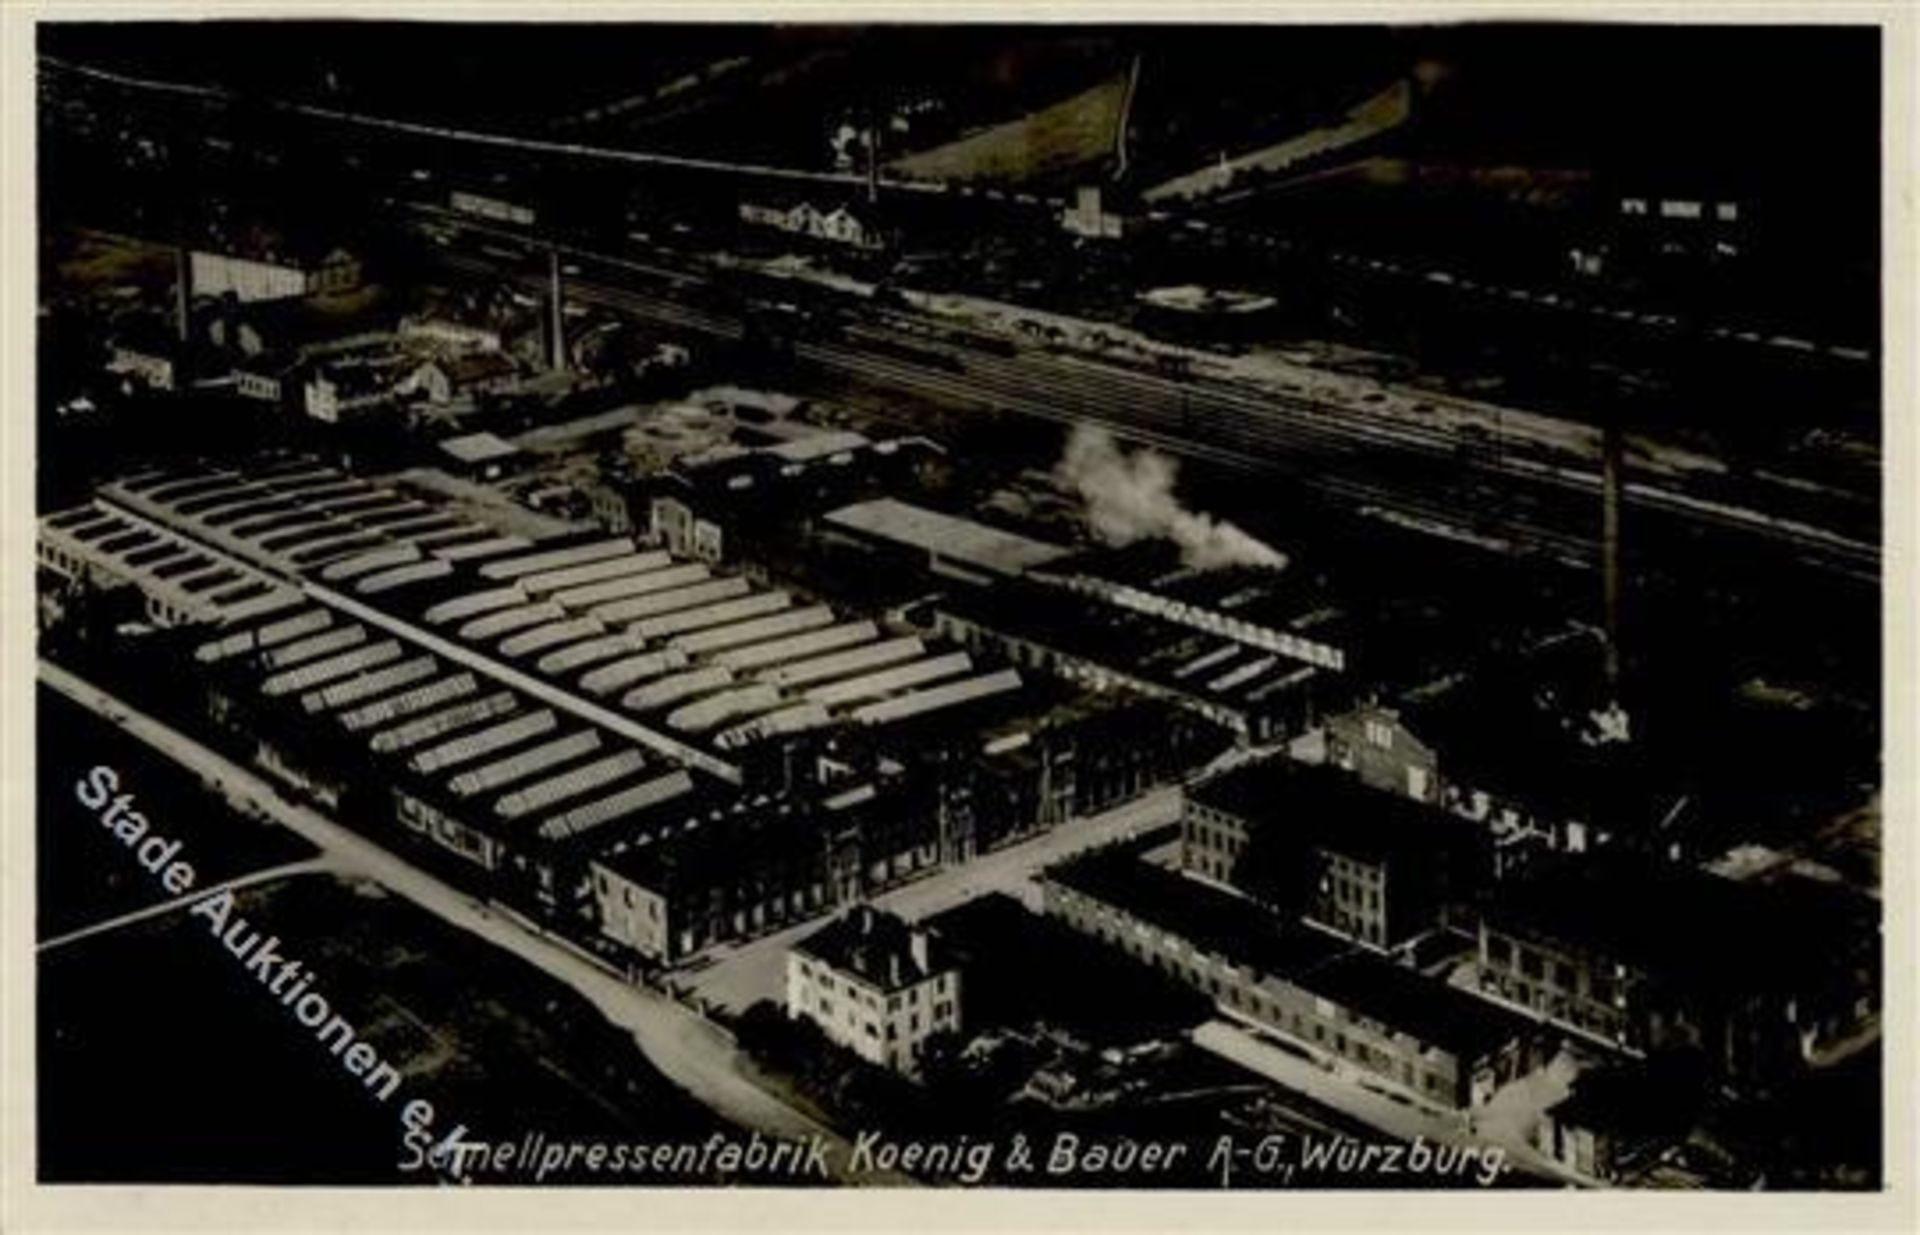 WÜRZBURG (8700) - Svchnellpressenfabrik Koenig&Bauer IDieses Los wird in einer online-Auktion ohne